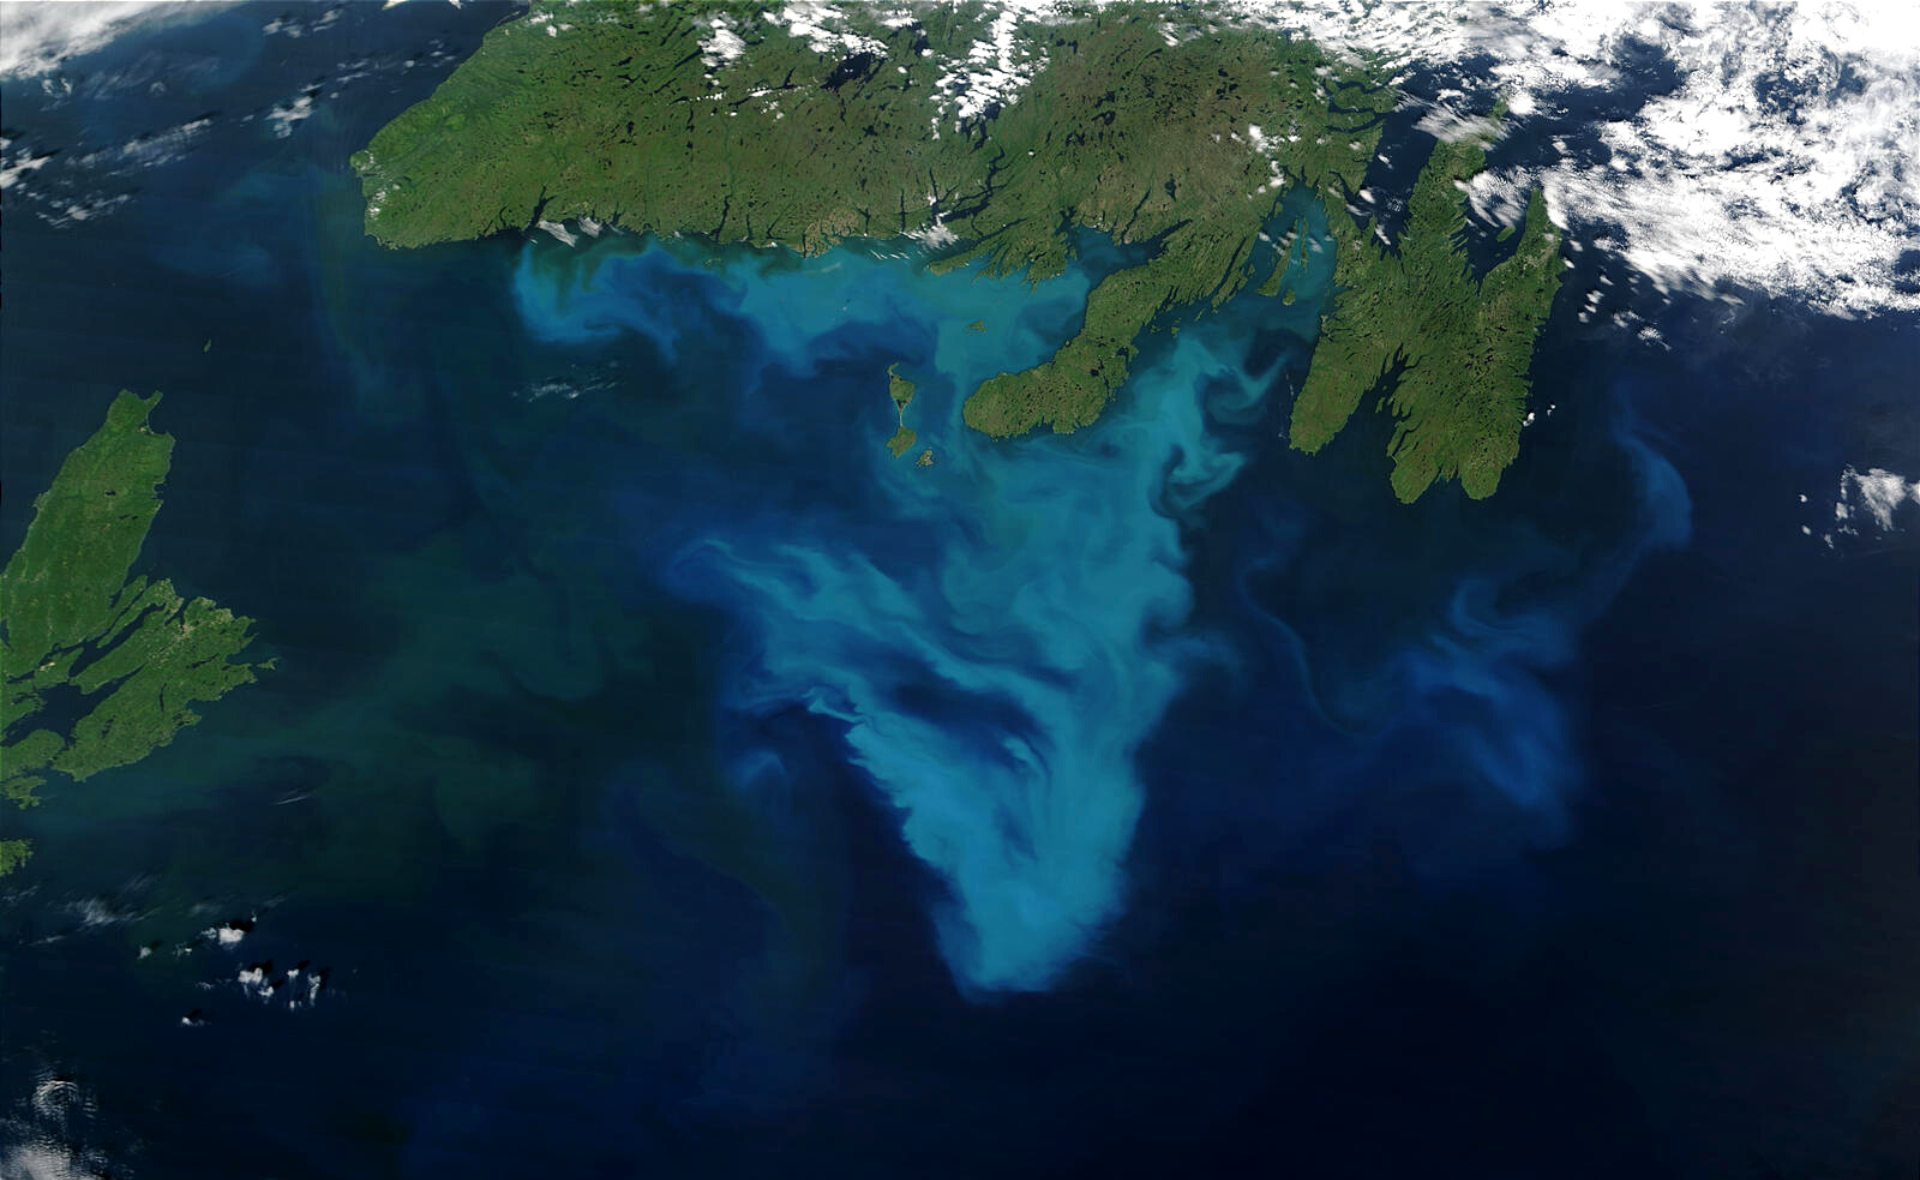 Floraison de phytoplancton au large de Terre-Neuve, Canada. Dans les eaux de l'océan Atlantique, au sud de Terre-Neuve, au Canada, un tourbillon bleu très coloré indique la présence d'une efflorescence phytoplanctonique.